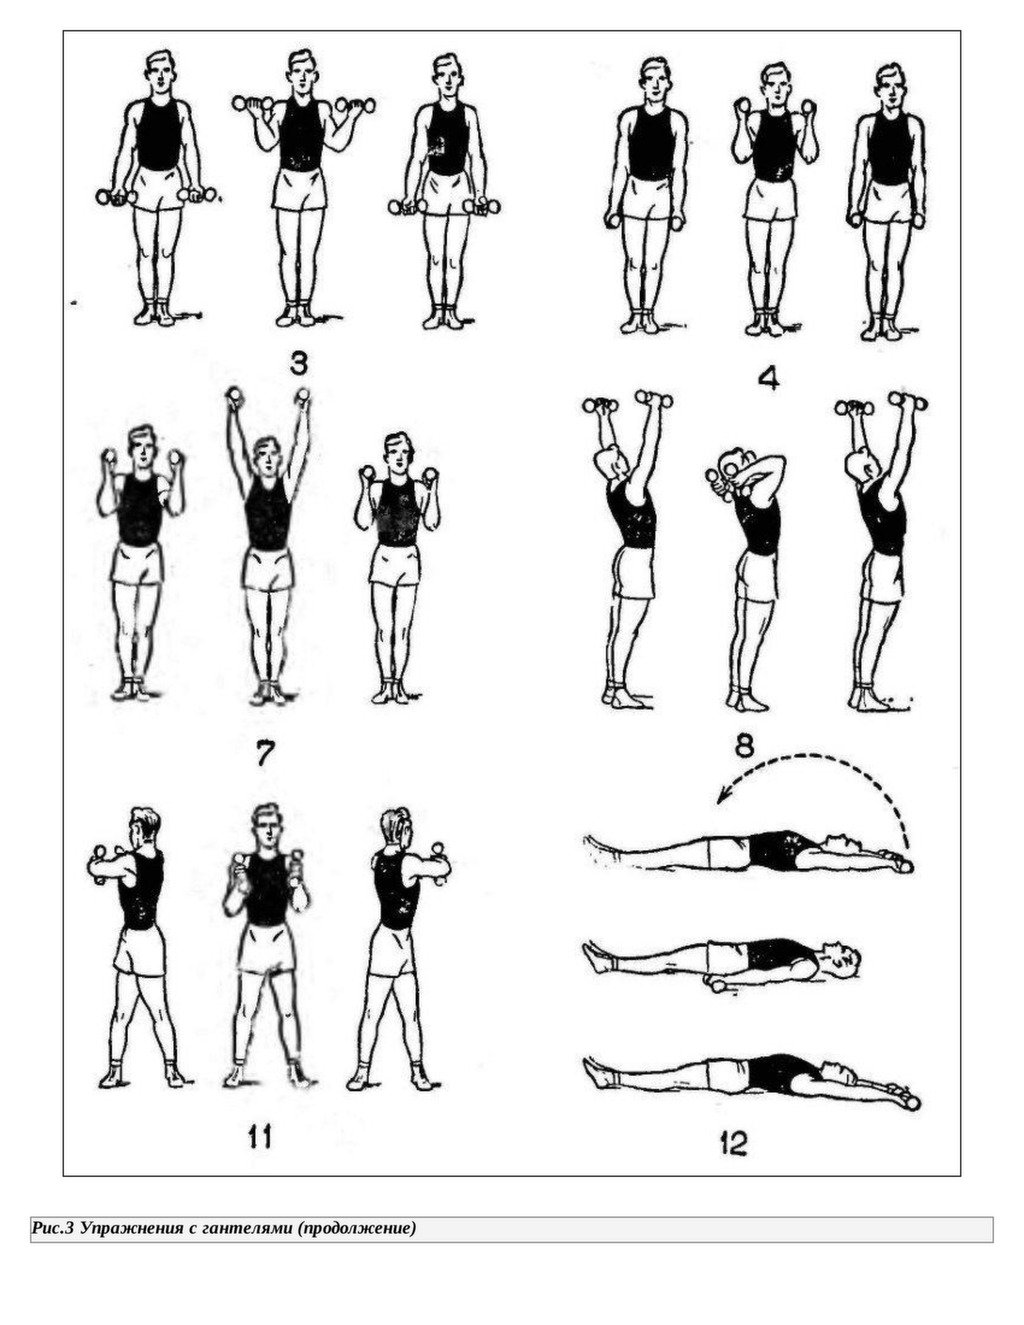 Упр с гантелями. Комплекс упражнений с гантельками. Комплекс упражнений с гантелями (10-12 упражнений). Комплекс упражнений для рук с гантелями. Упражнения с гантельками для женщин.